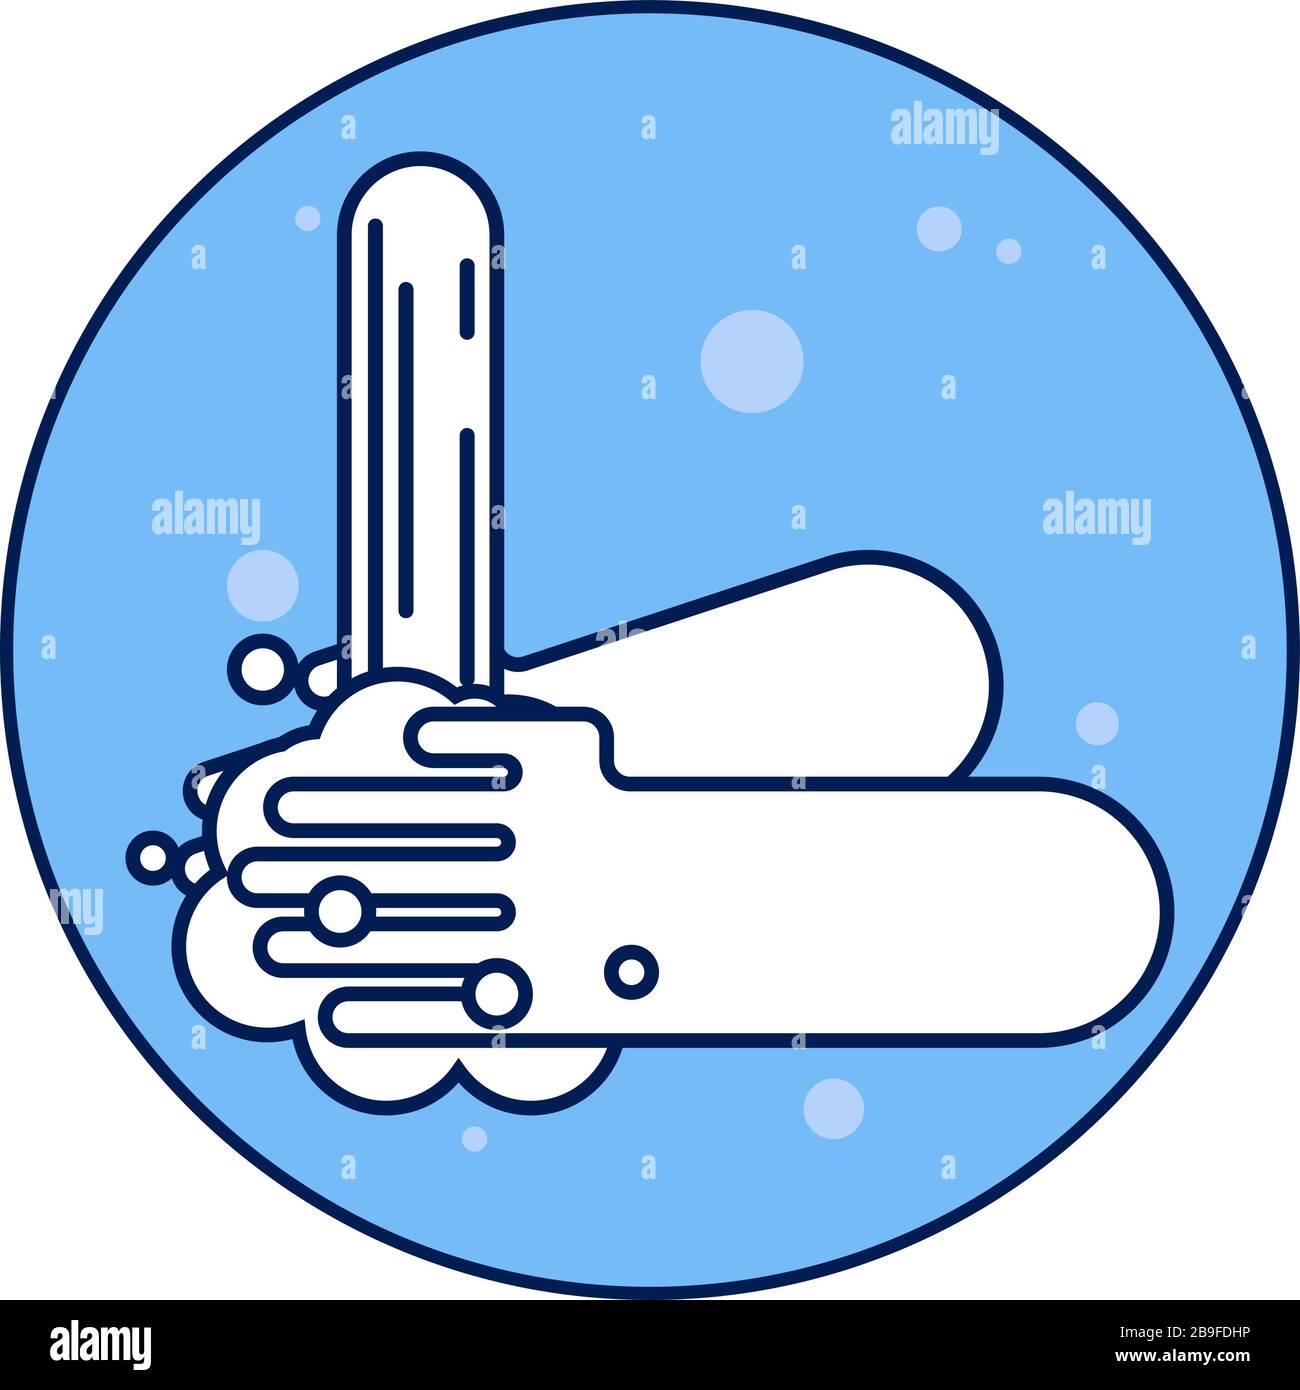 Vektor-Symbol der menschlichen Hände, die mit Seife gewaschen werden. Flache Darstellung. Stock Vektor